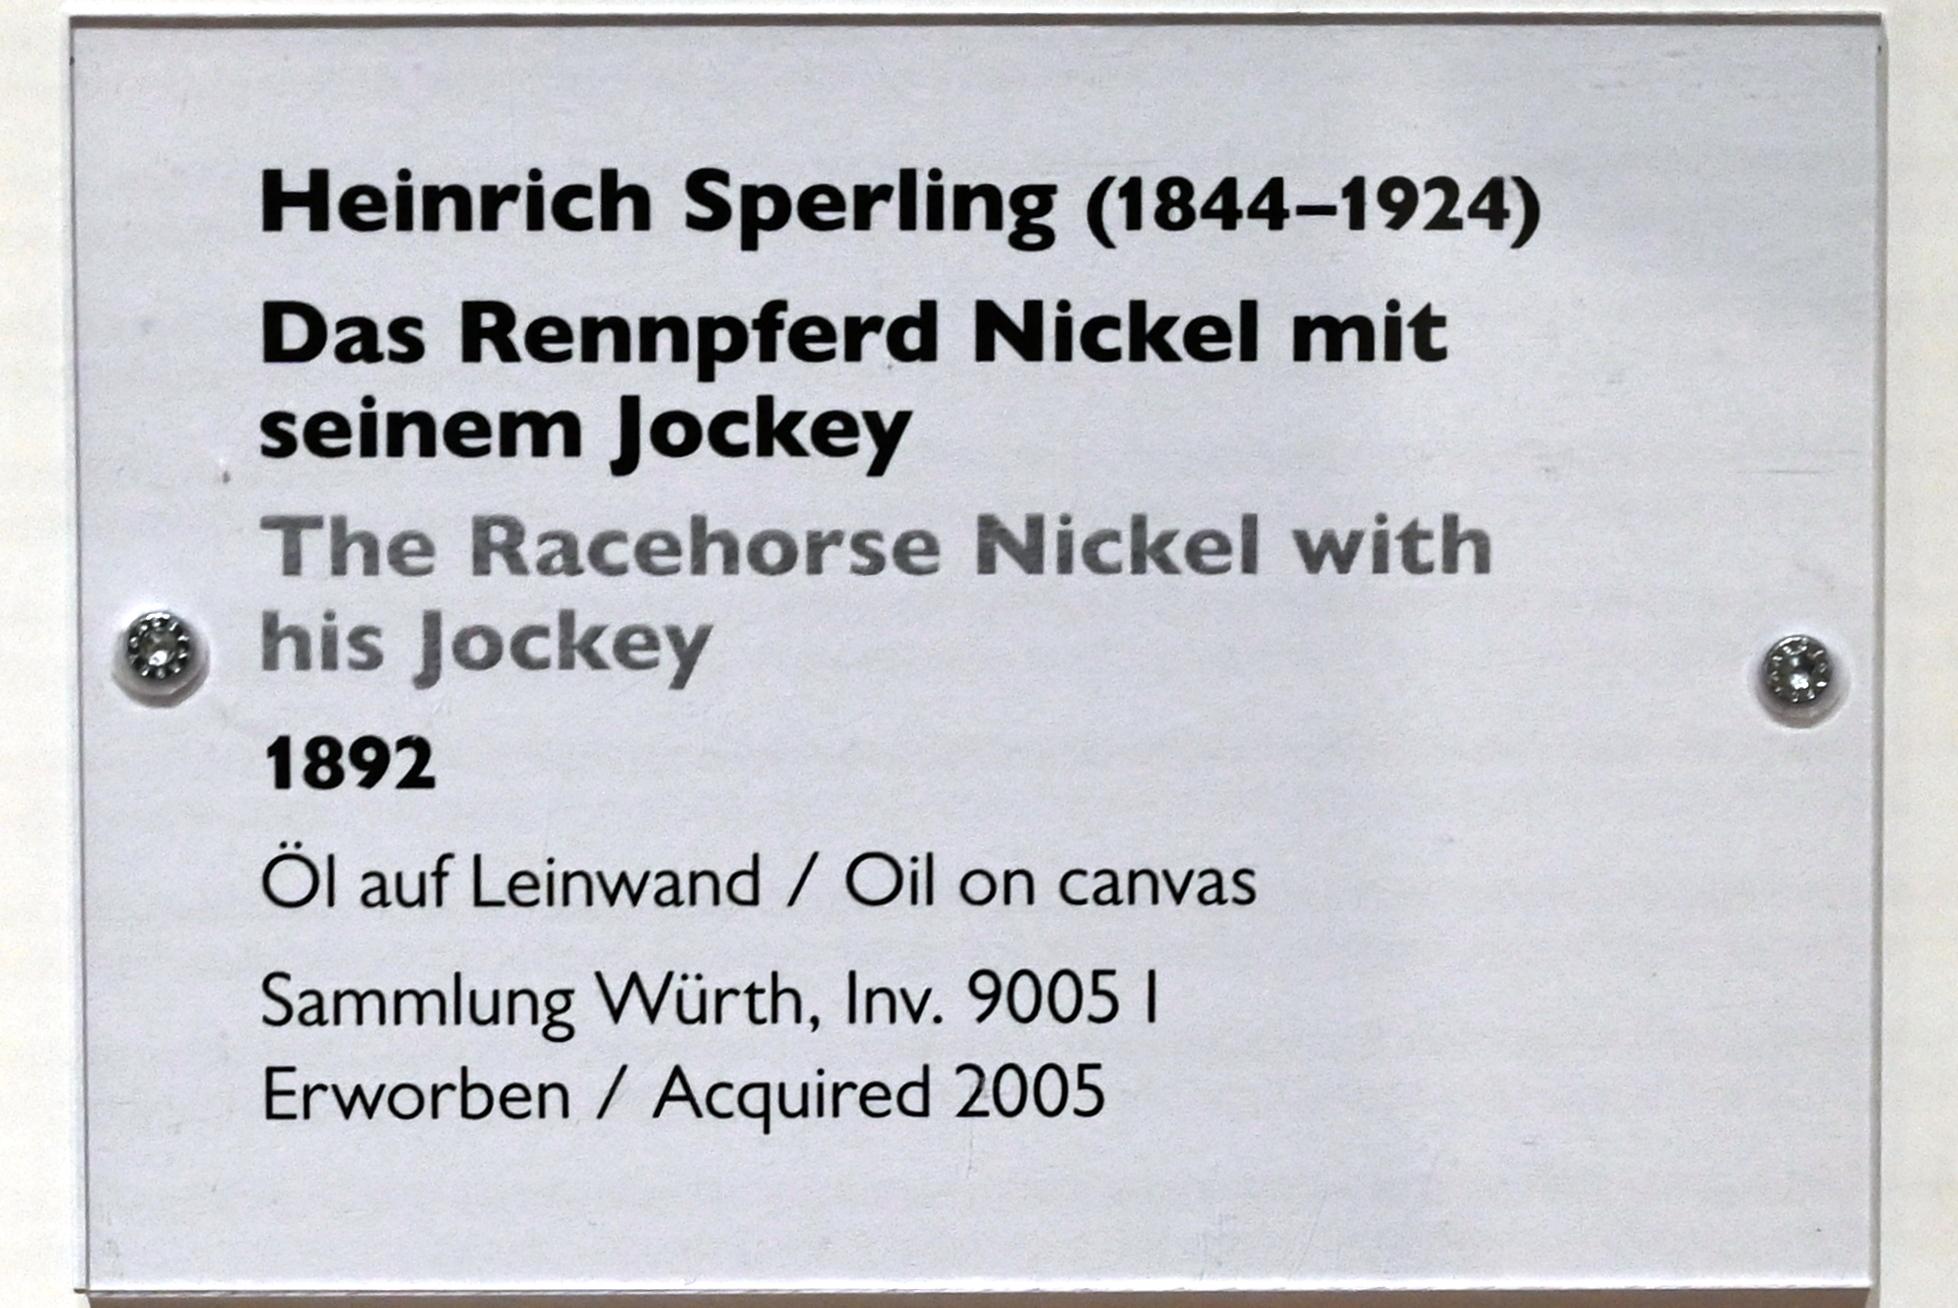 Heinrich Sperling (1892), Das Rennpferd Nickel mit seinem Jockey, Schwäbisch Hall, Kunsthalle Würth, Ausstellung "Sport, Spaß und Spiel" vom 13.12.2021 - 26.02.2023, Untergeschoß, 1892, Bild 2/2